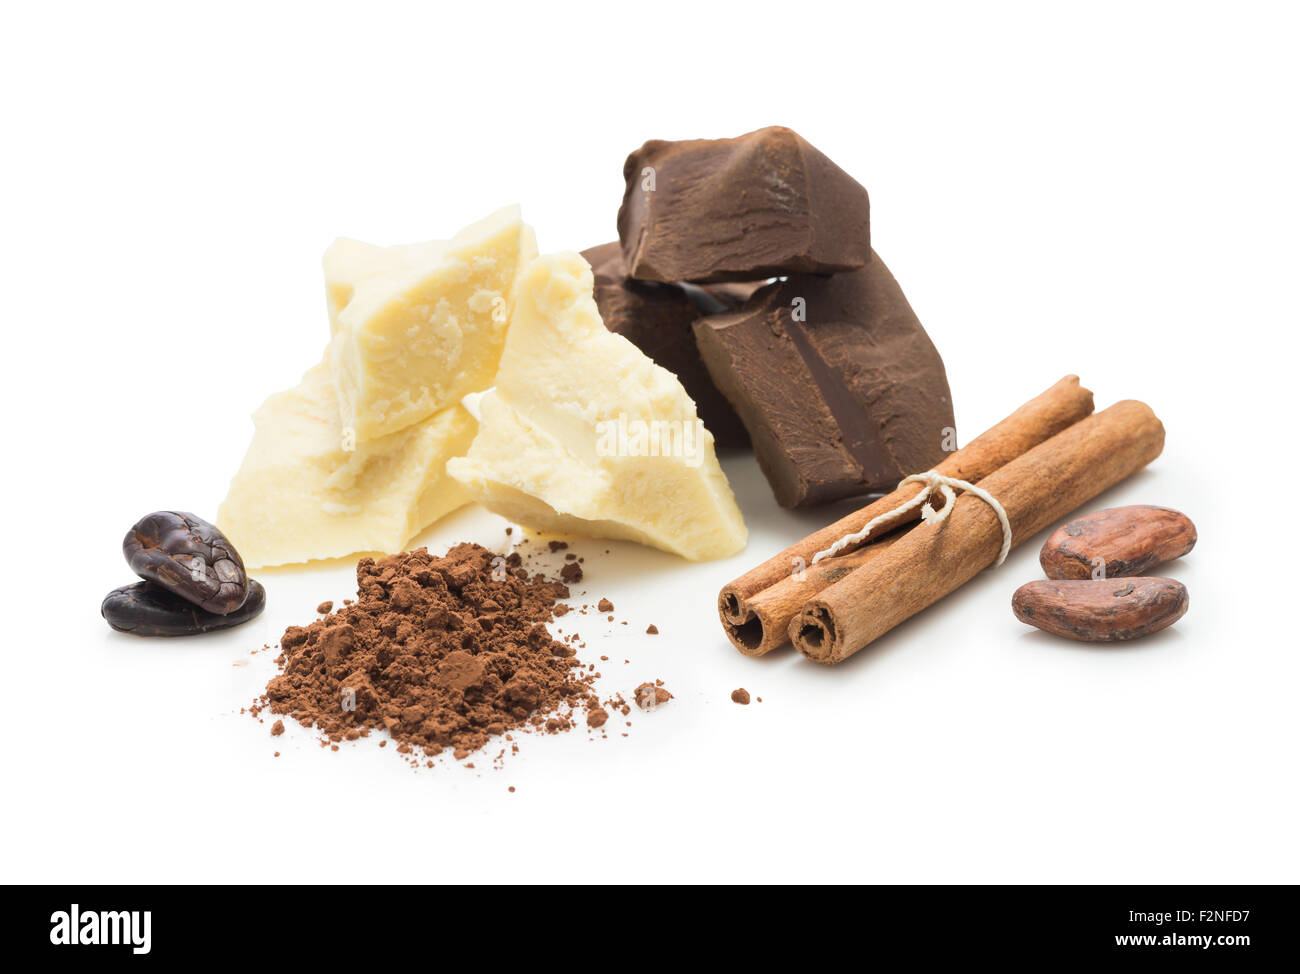 Ingredienti per la cottura di cioccolato artigianale, le fave di cacao, la polvere di cacao, burro di cacao amaro cioccolato blocco, cottura Foto Stock